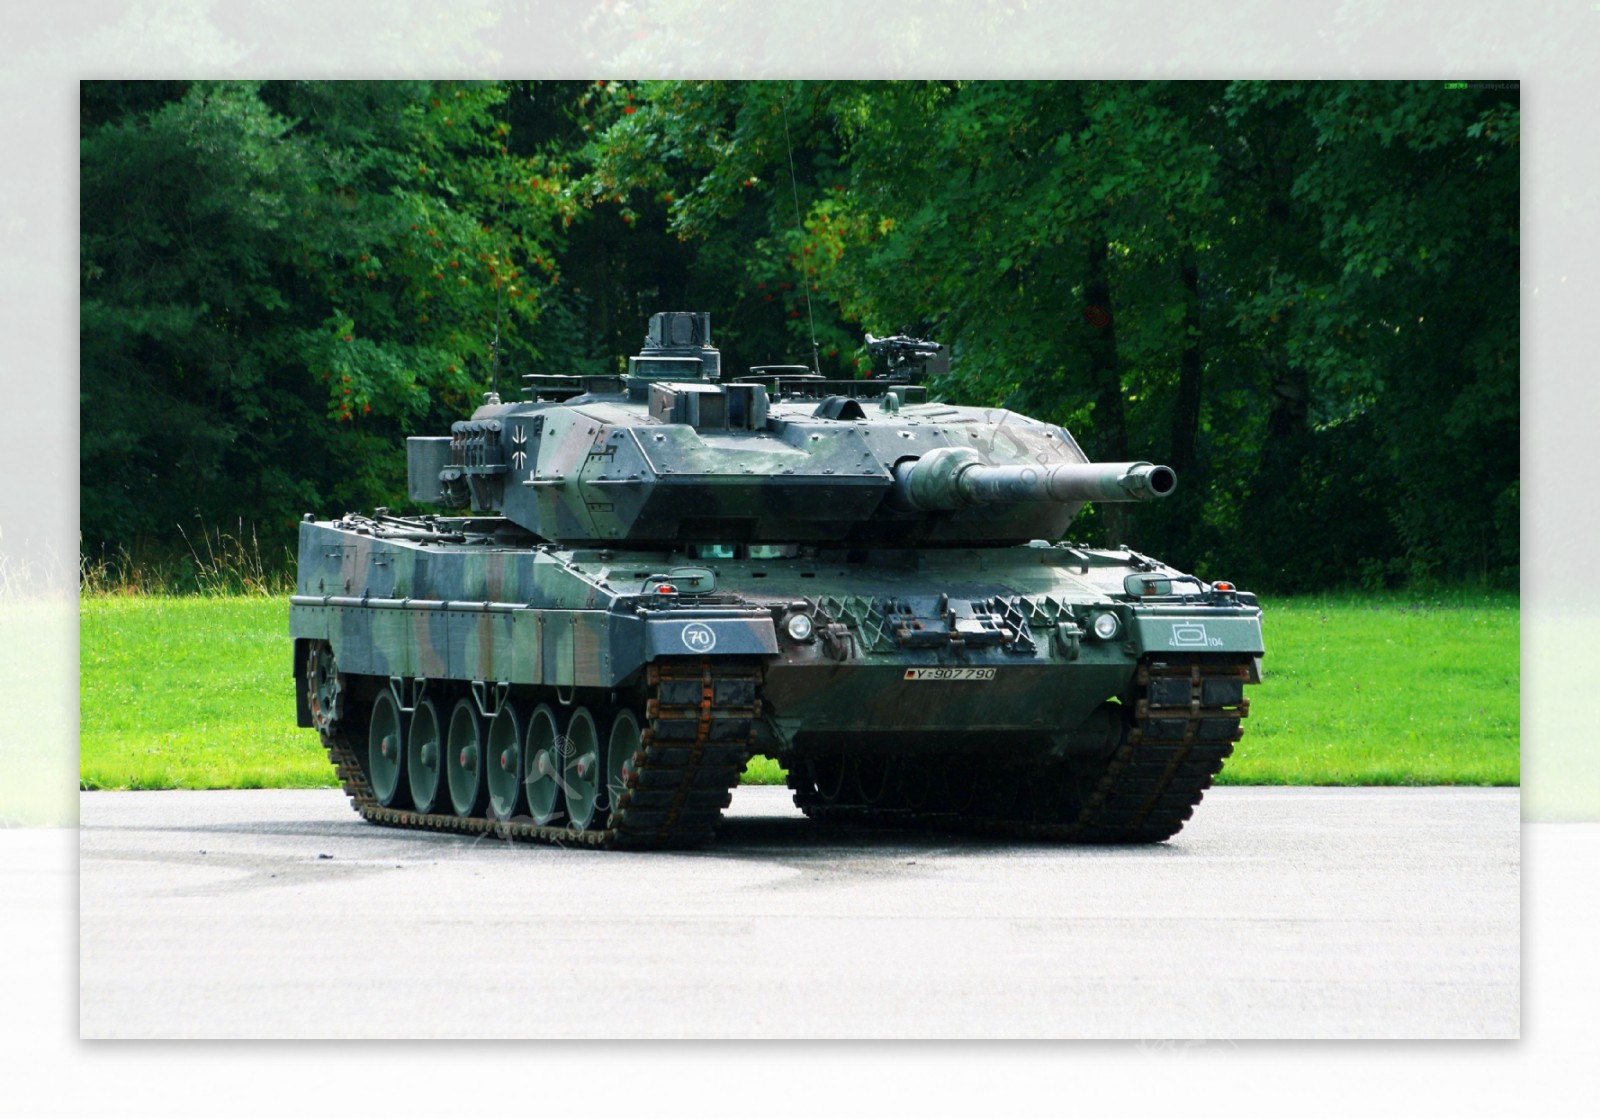 豹2坦克图片